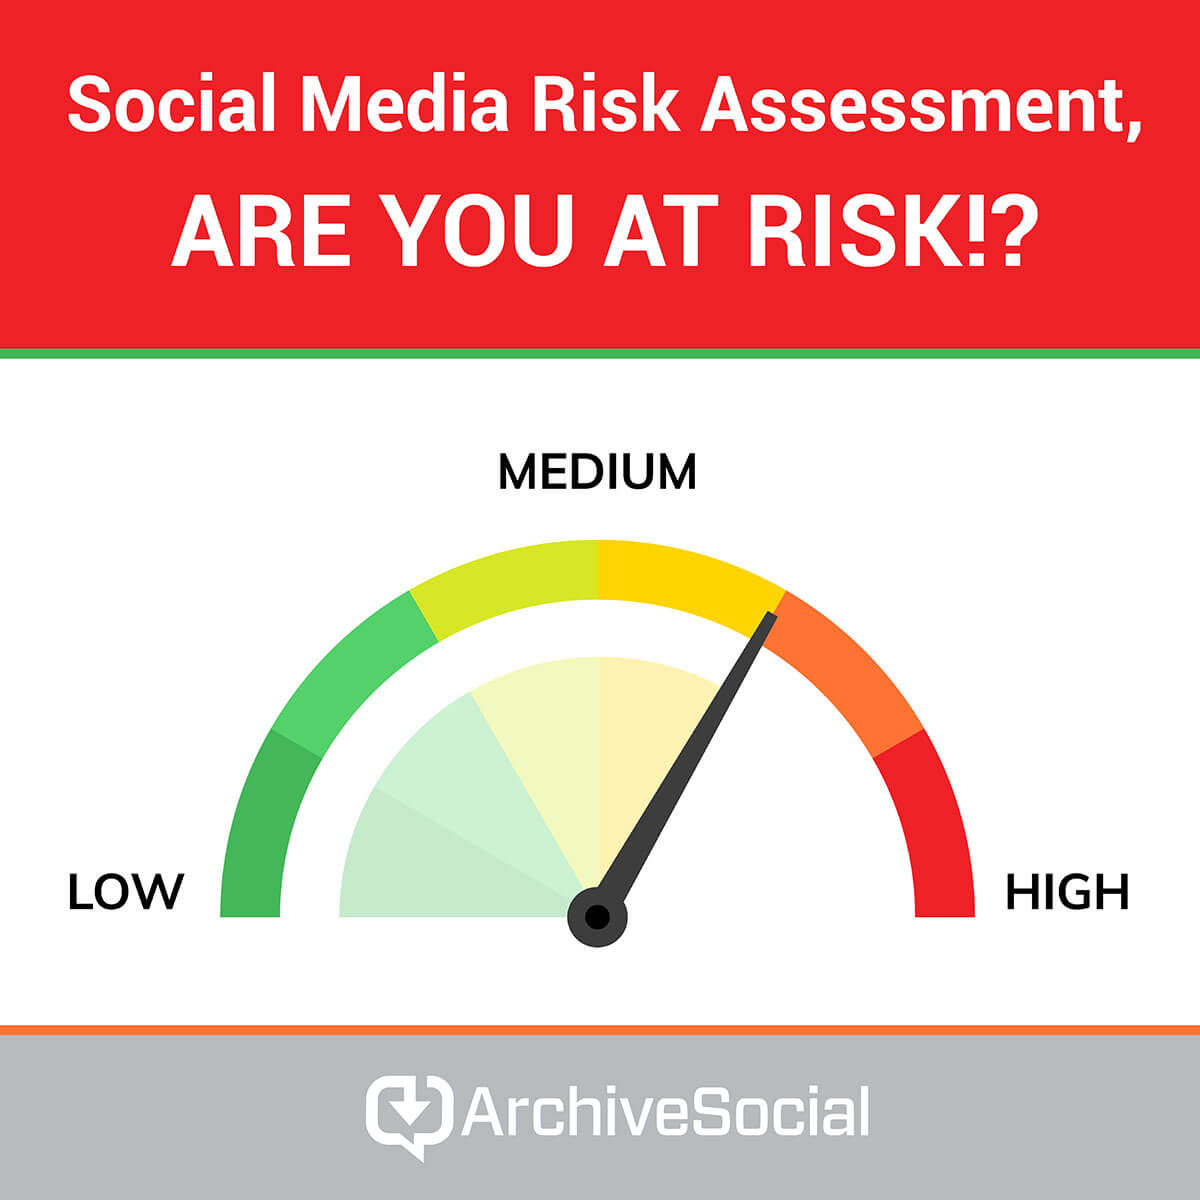 Take the social media risk assessment quiz